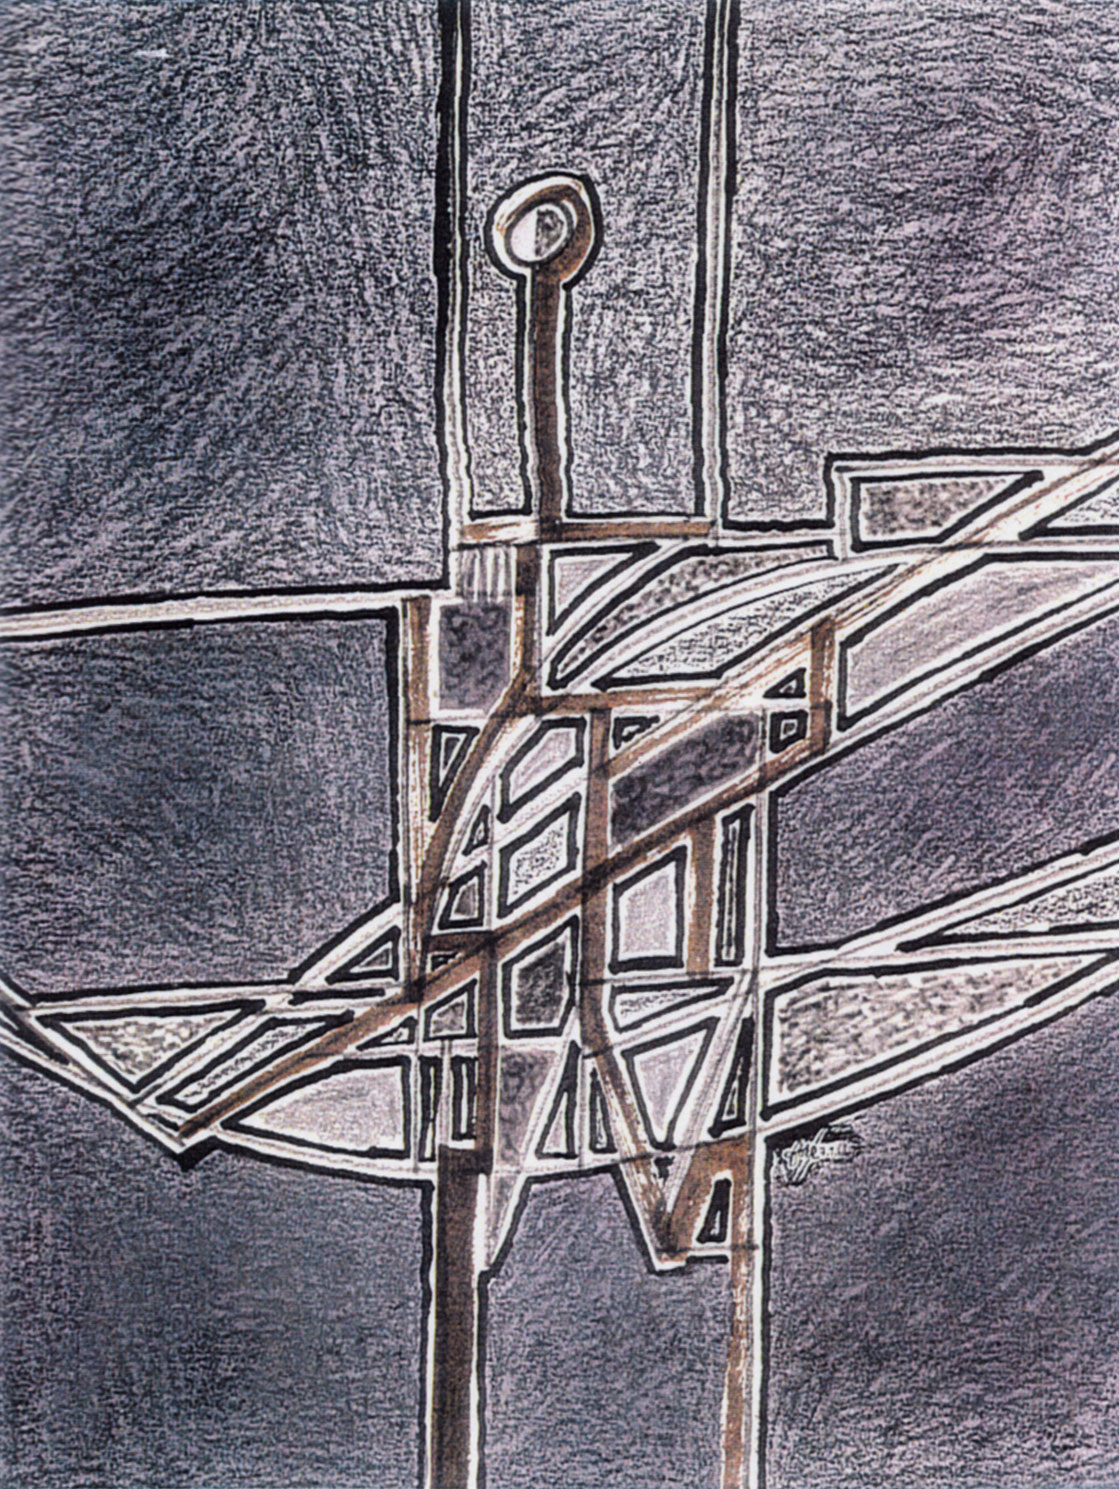 “Personnage aux deux appuis”, crayons, feutres, pastels, 38,8 x 32,7 cm ; Coll. Foré, 1966.